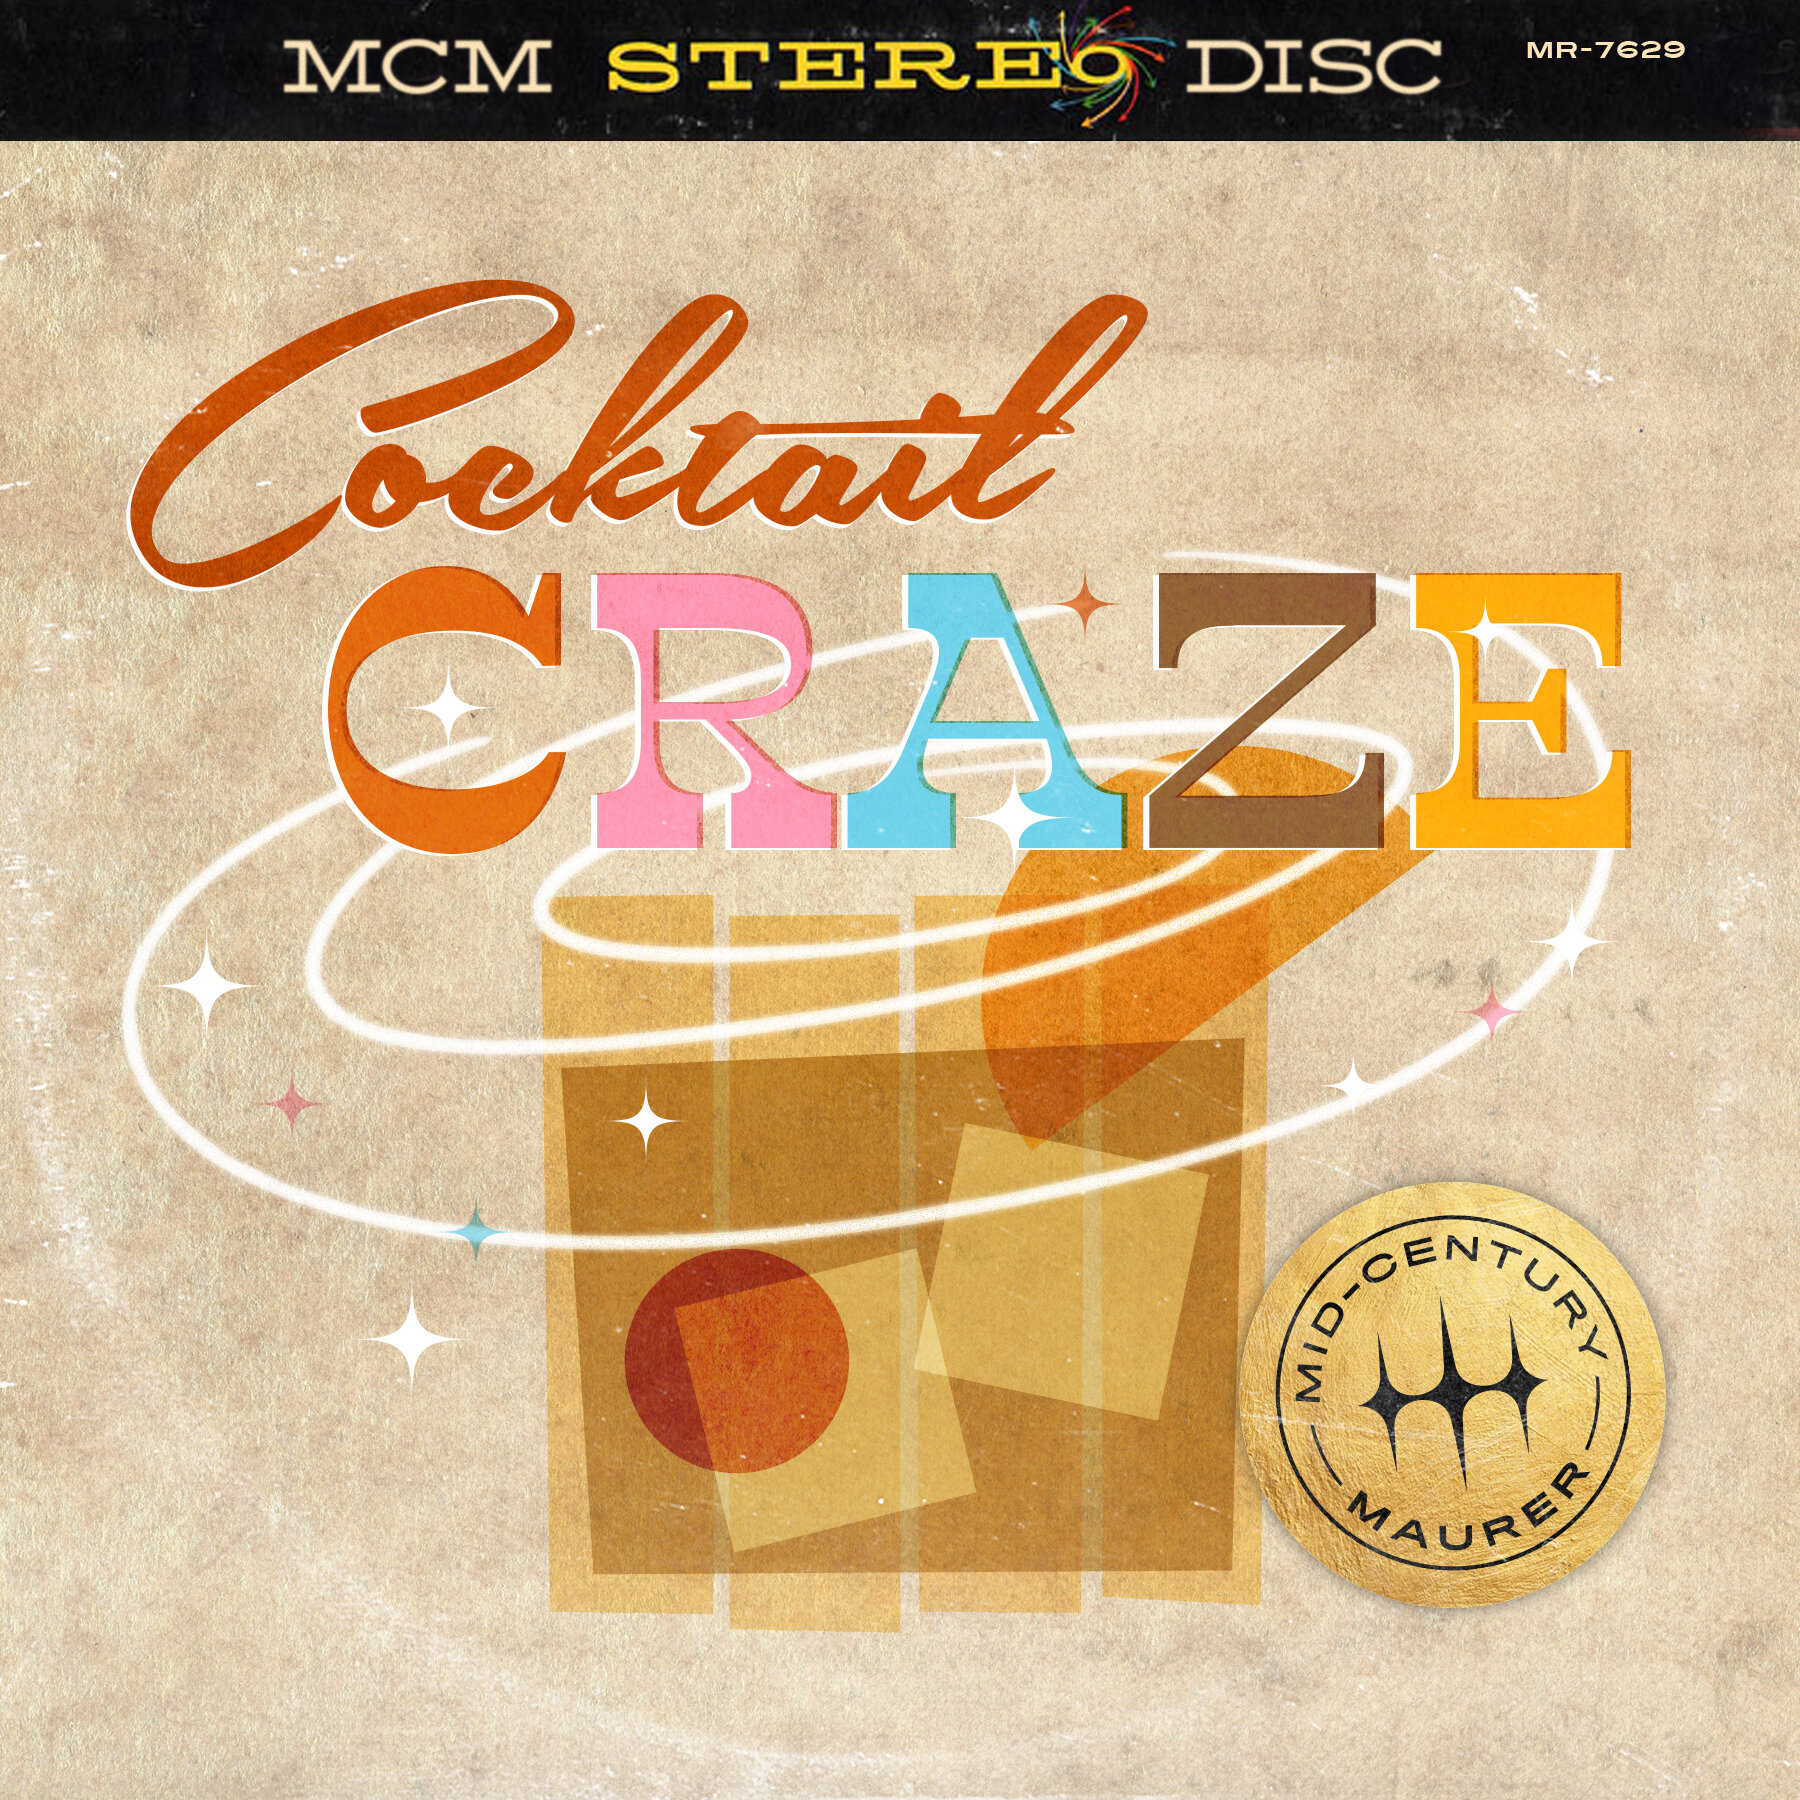 MCM_Album_CocktailCraze_V1.jpg